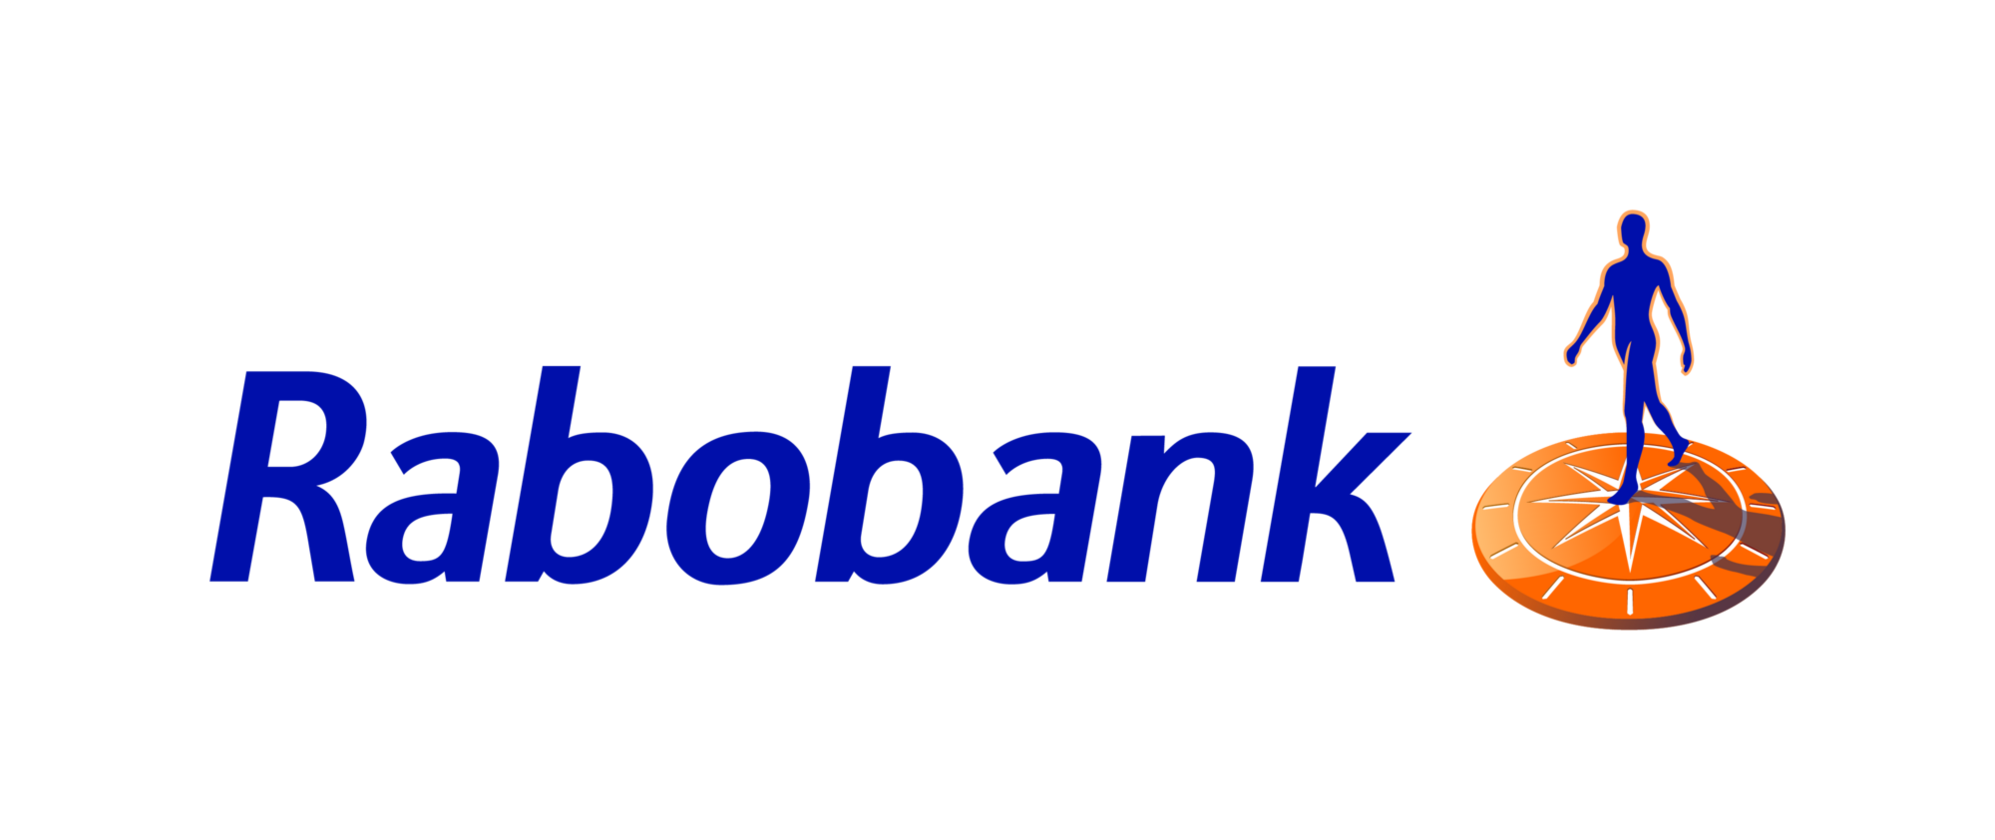 Rabobank wordmark imagemark rgb